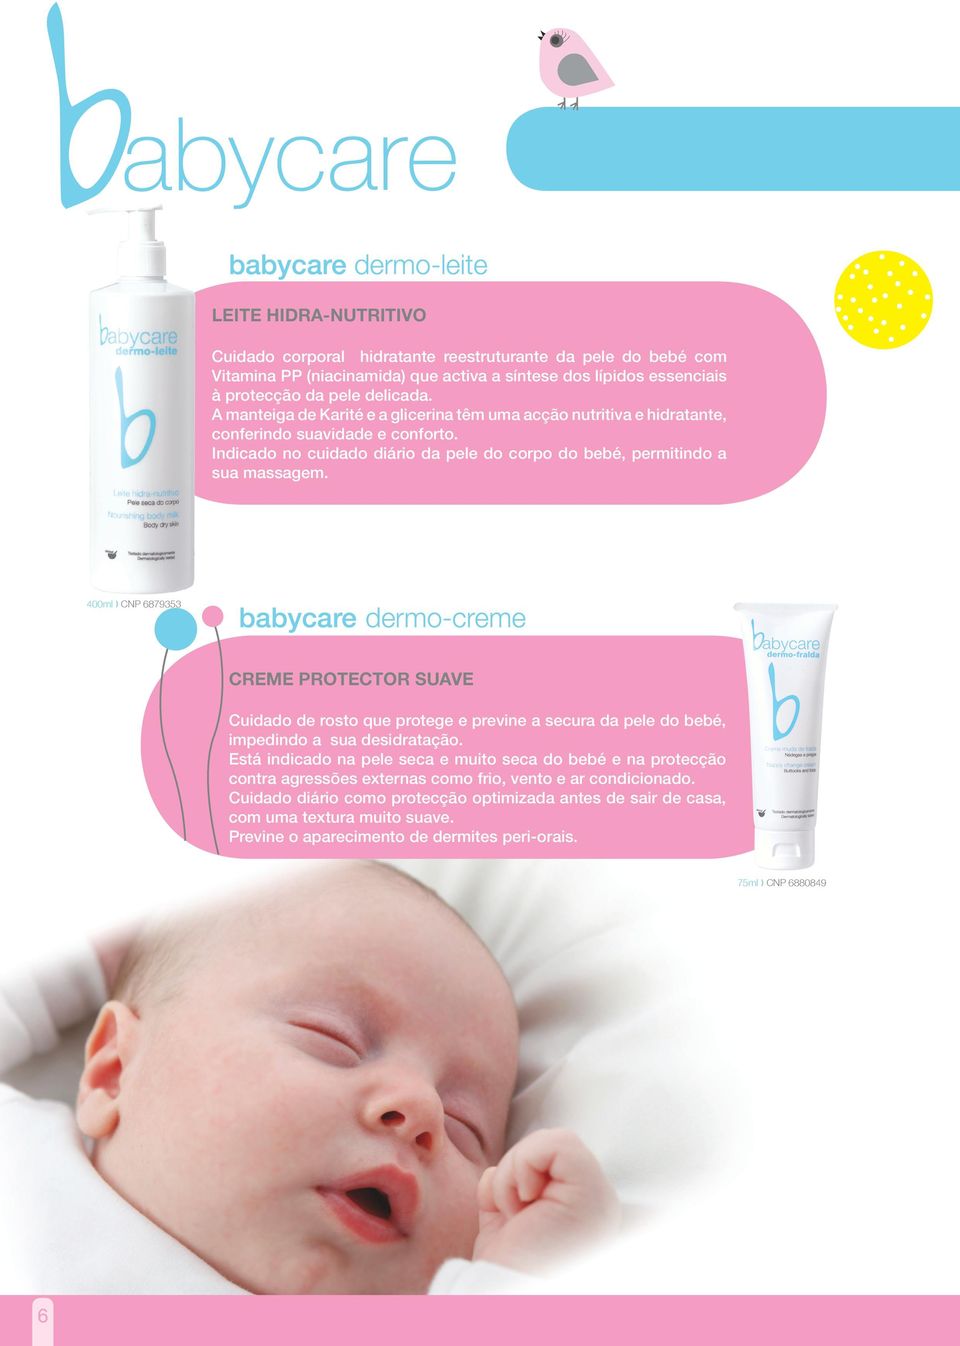 400ml CNP 6879353 babycare dermo-creme CREME PROTECTOR SUAVE Cuidado de rosto que protege e previne a secura da pele do bebé, impedindo a sua desidratação.